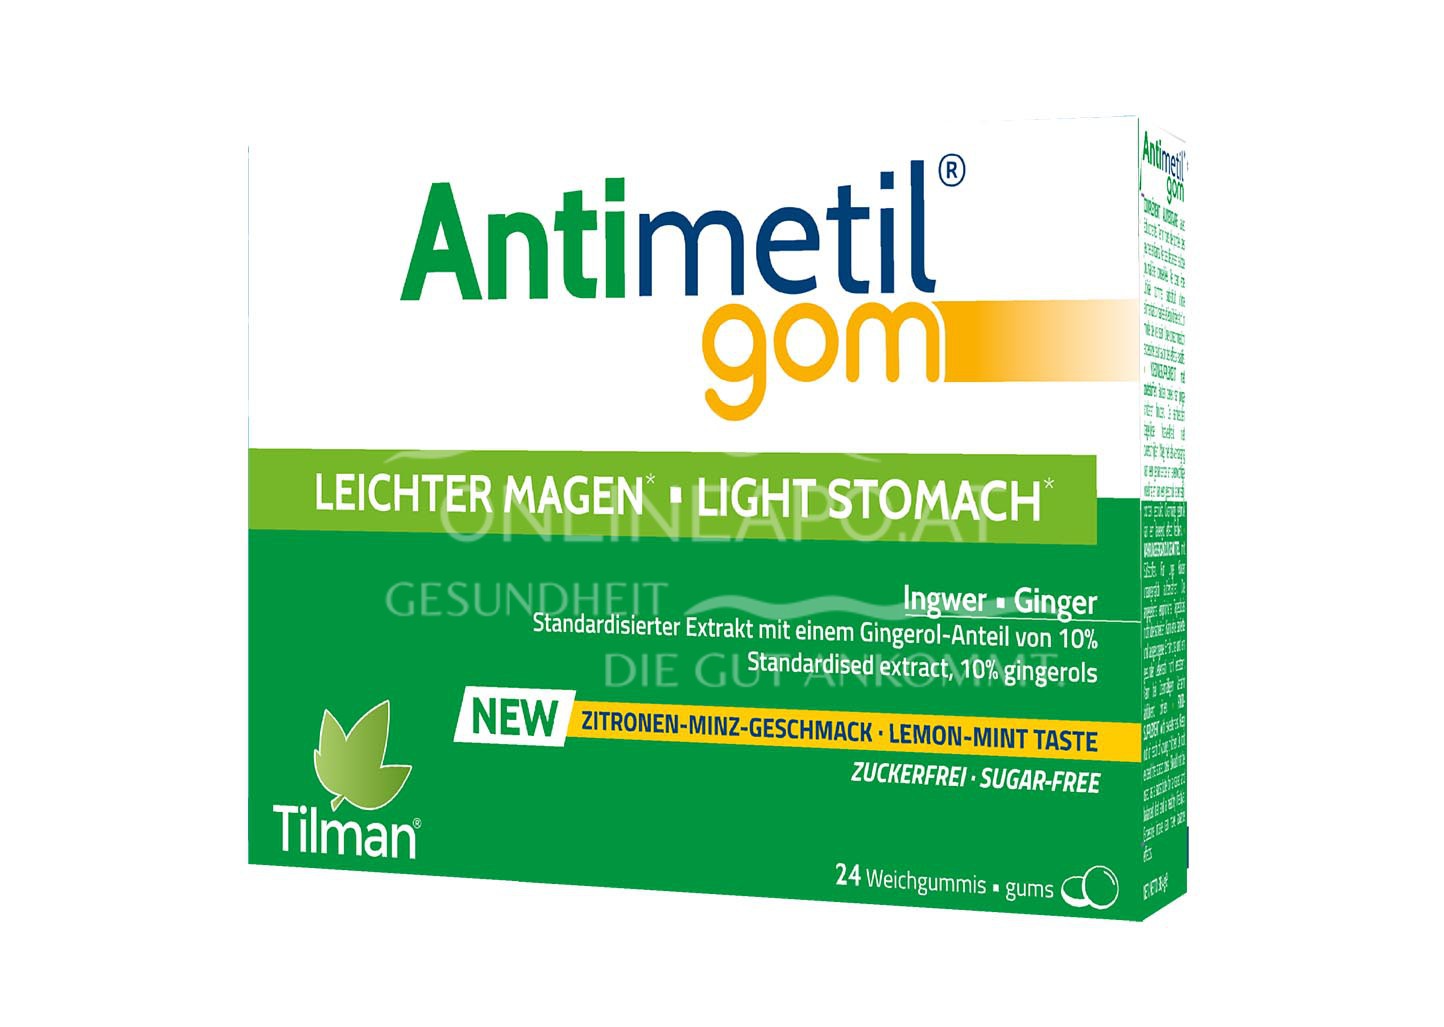 Antimetil® Gom Weichgummi